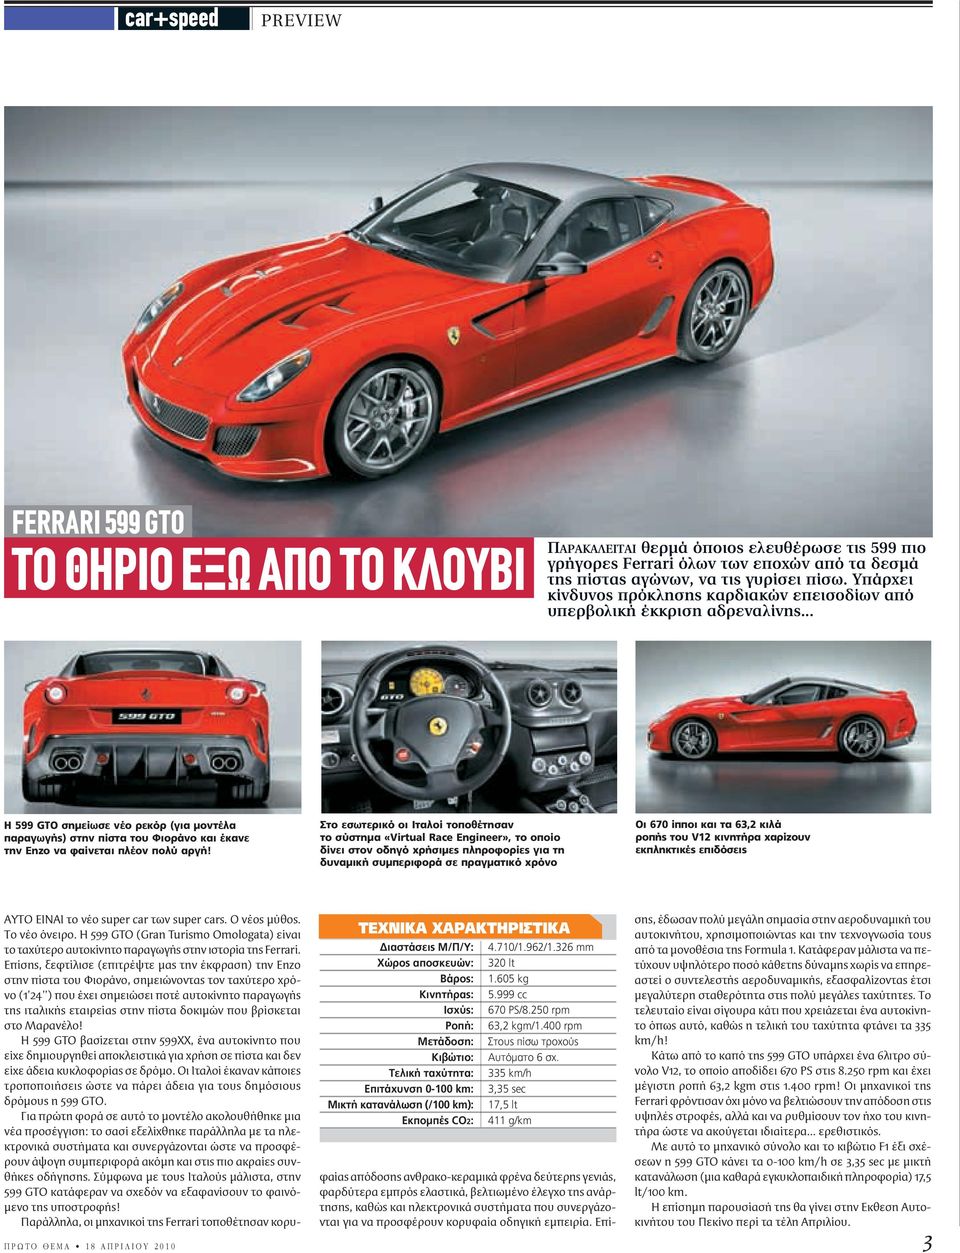 .. Η 599 GTO σημείωσε νέο ρεκόρ (για μοντέλα παραγωγής) στην πίστα του Φιοράνο και έκανε την Enzo να φαίνεται πλέον πολύ αργή!